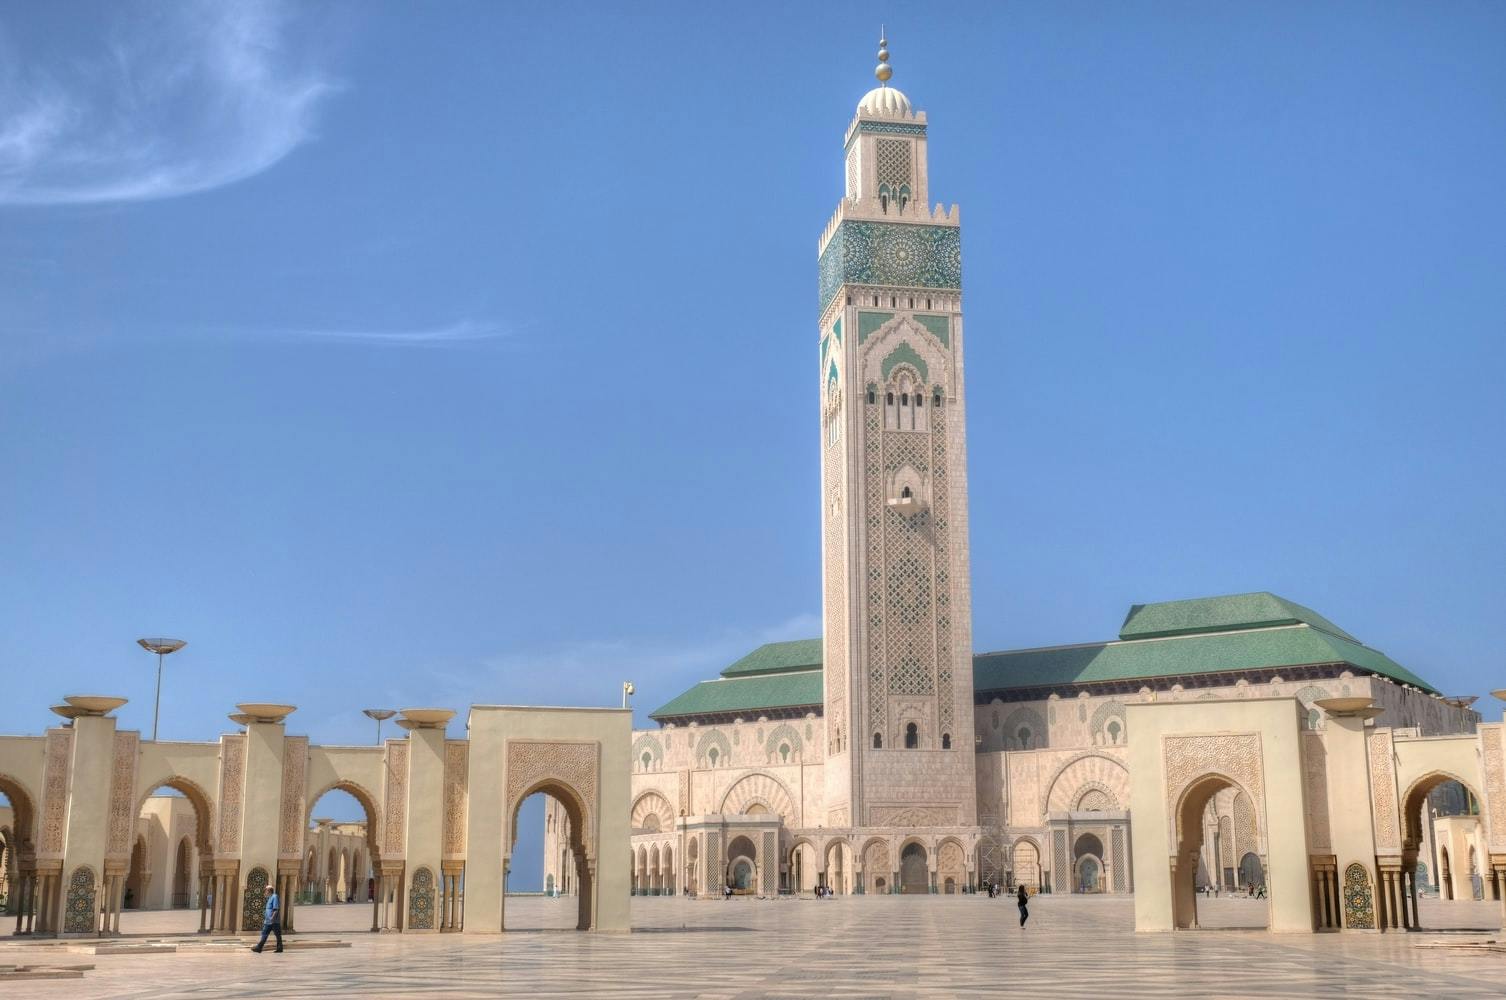 Viagem privada de um dia a Casablanca com traslado de Marrakech